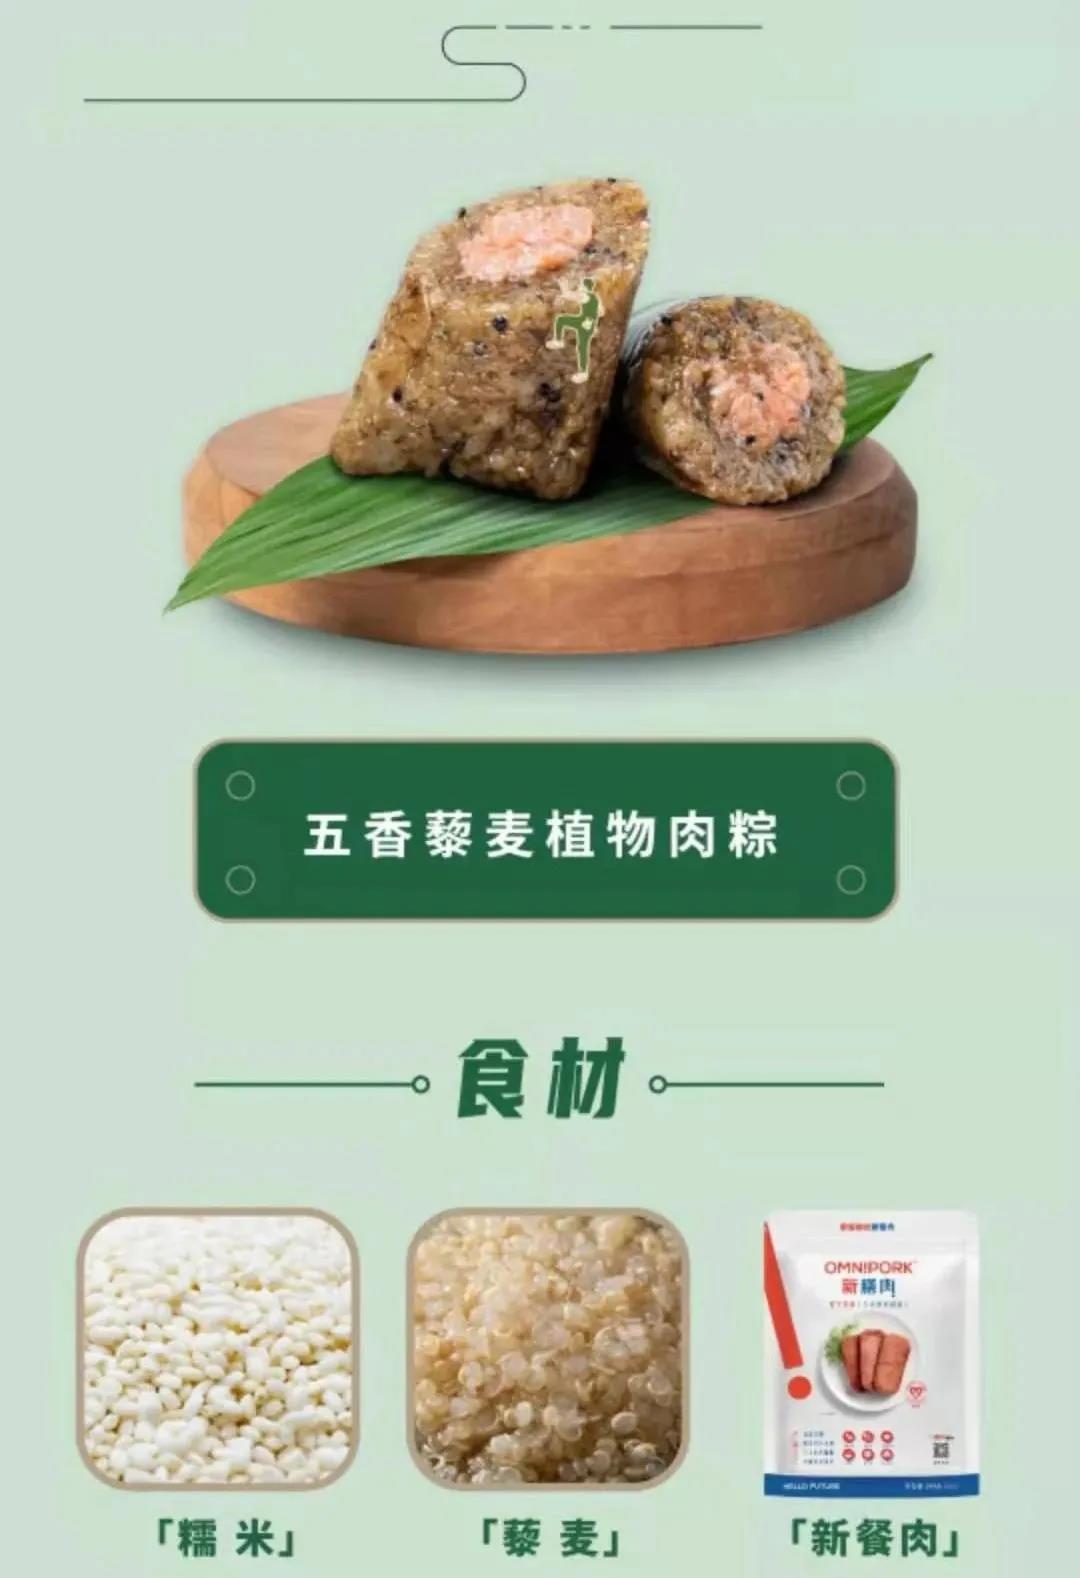 42 36 端午节4个植物肉粽子品牌推荐：新素食、新膳肉、米曰、玲珑素